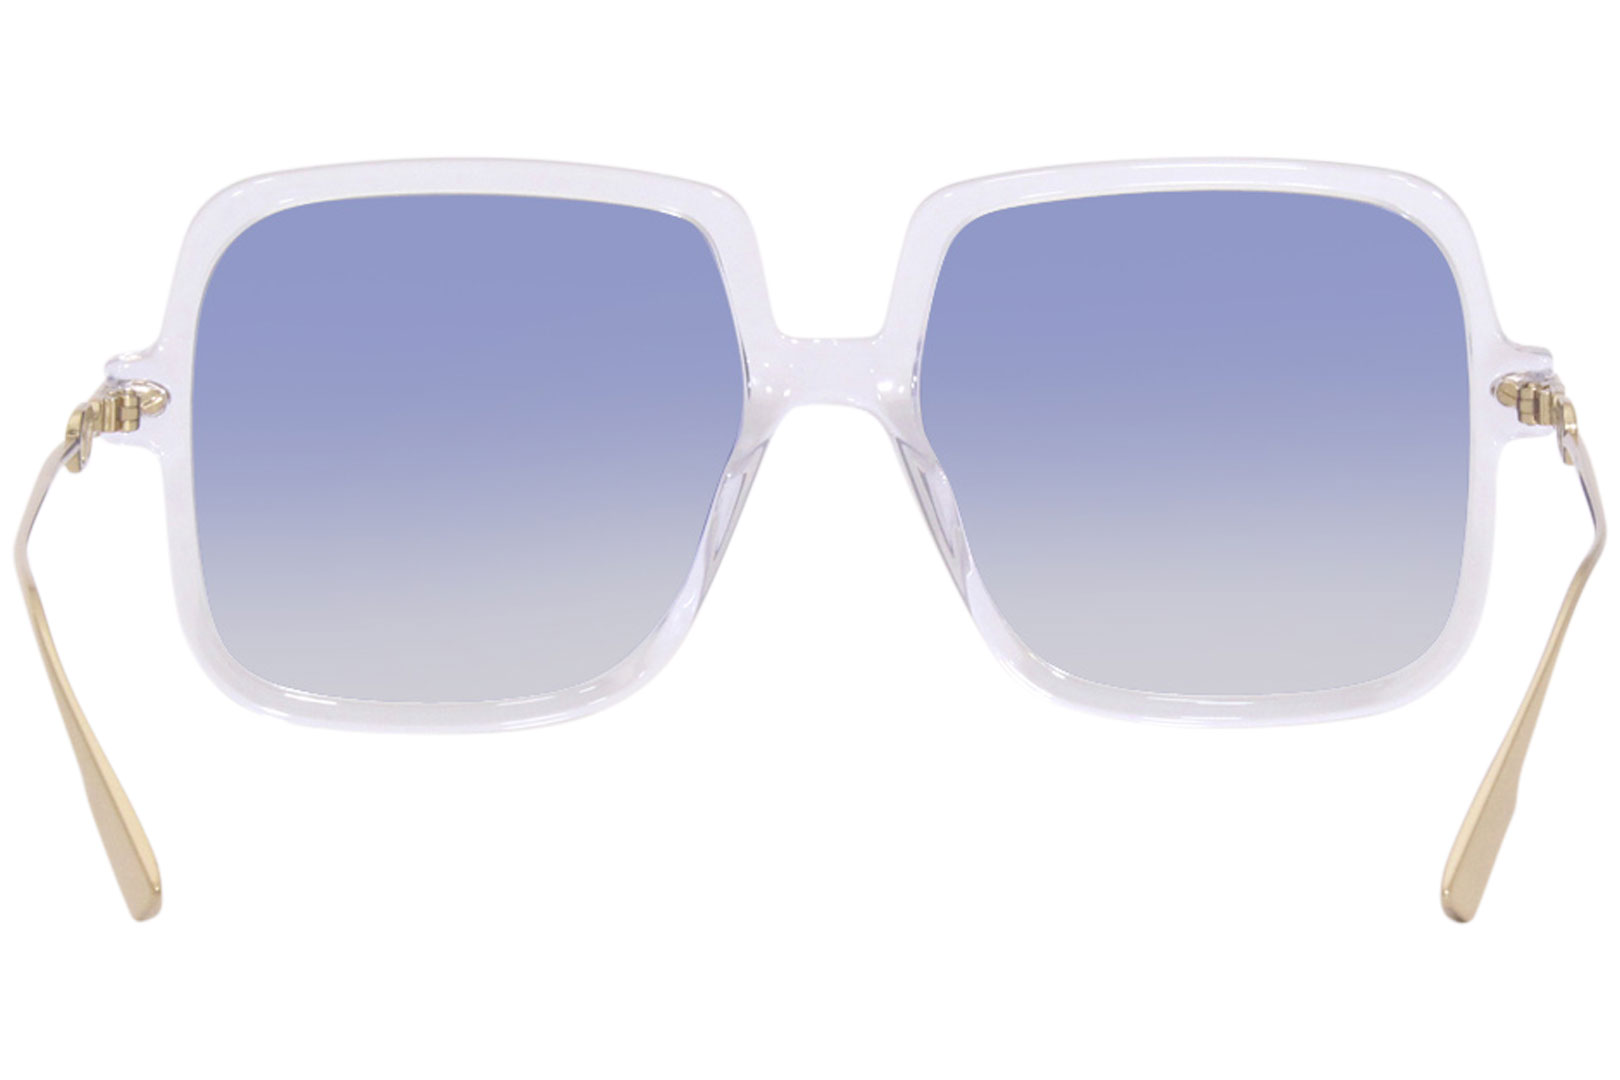 Dior  Accessories  Dior Link Sunglasses  Poshmark